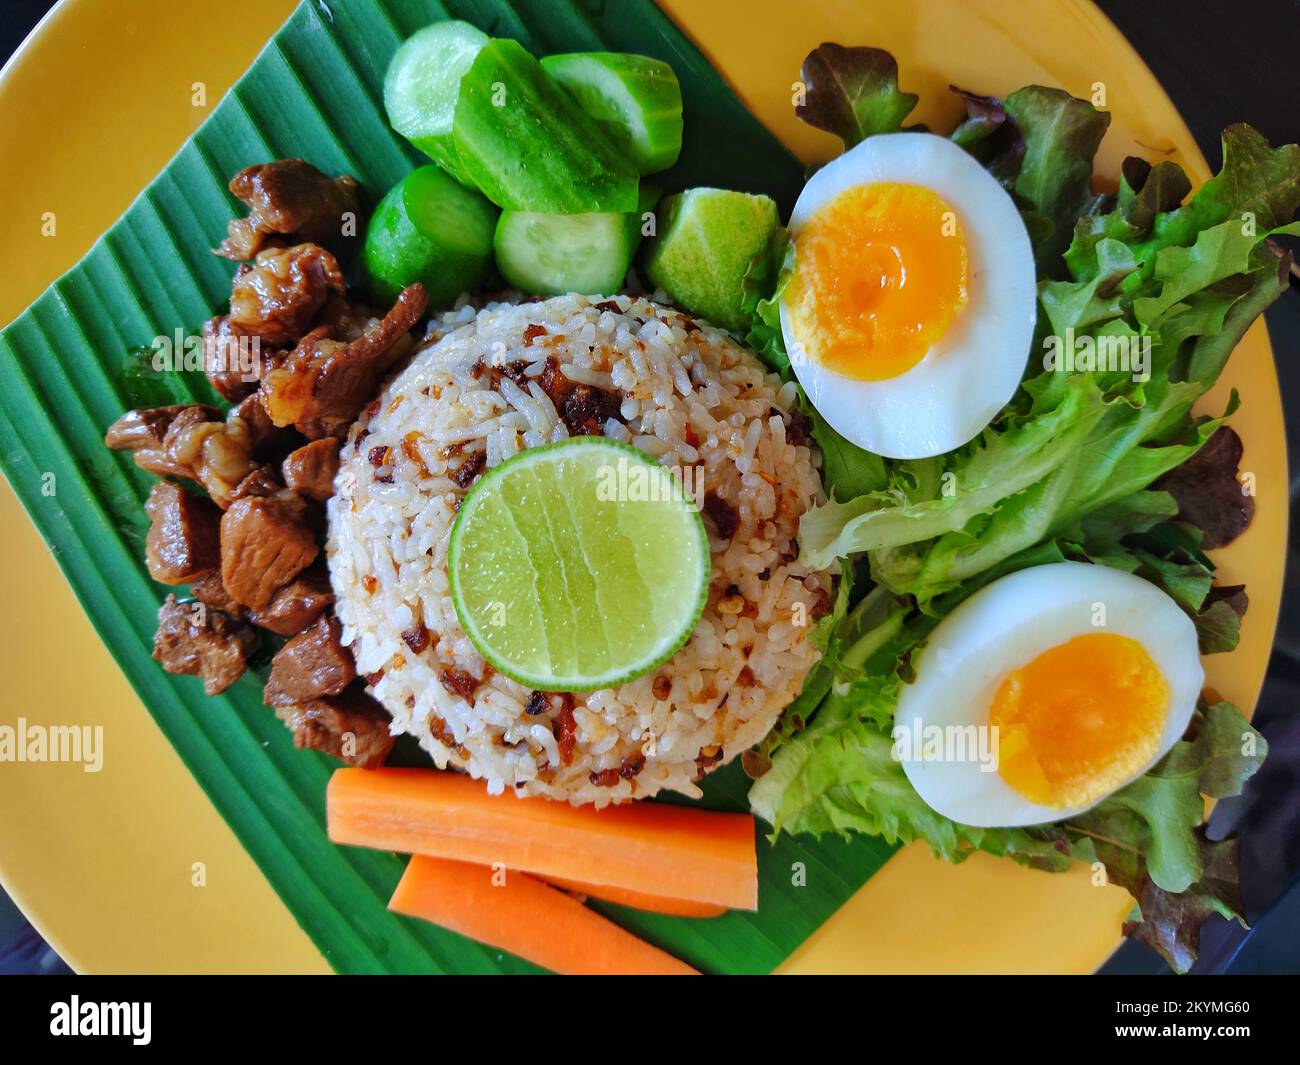 Cuisine folklorique thaïlandaise, riz frit avec pâte de Chili et poisson Banque D'Images